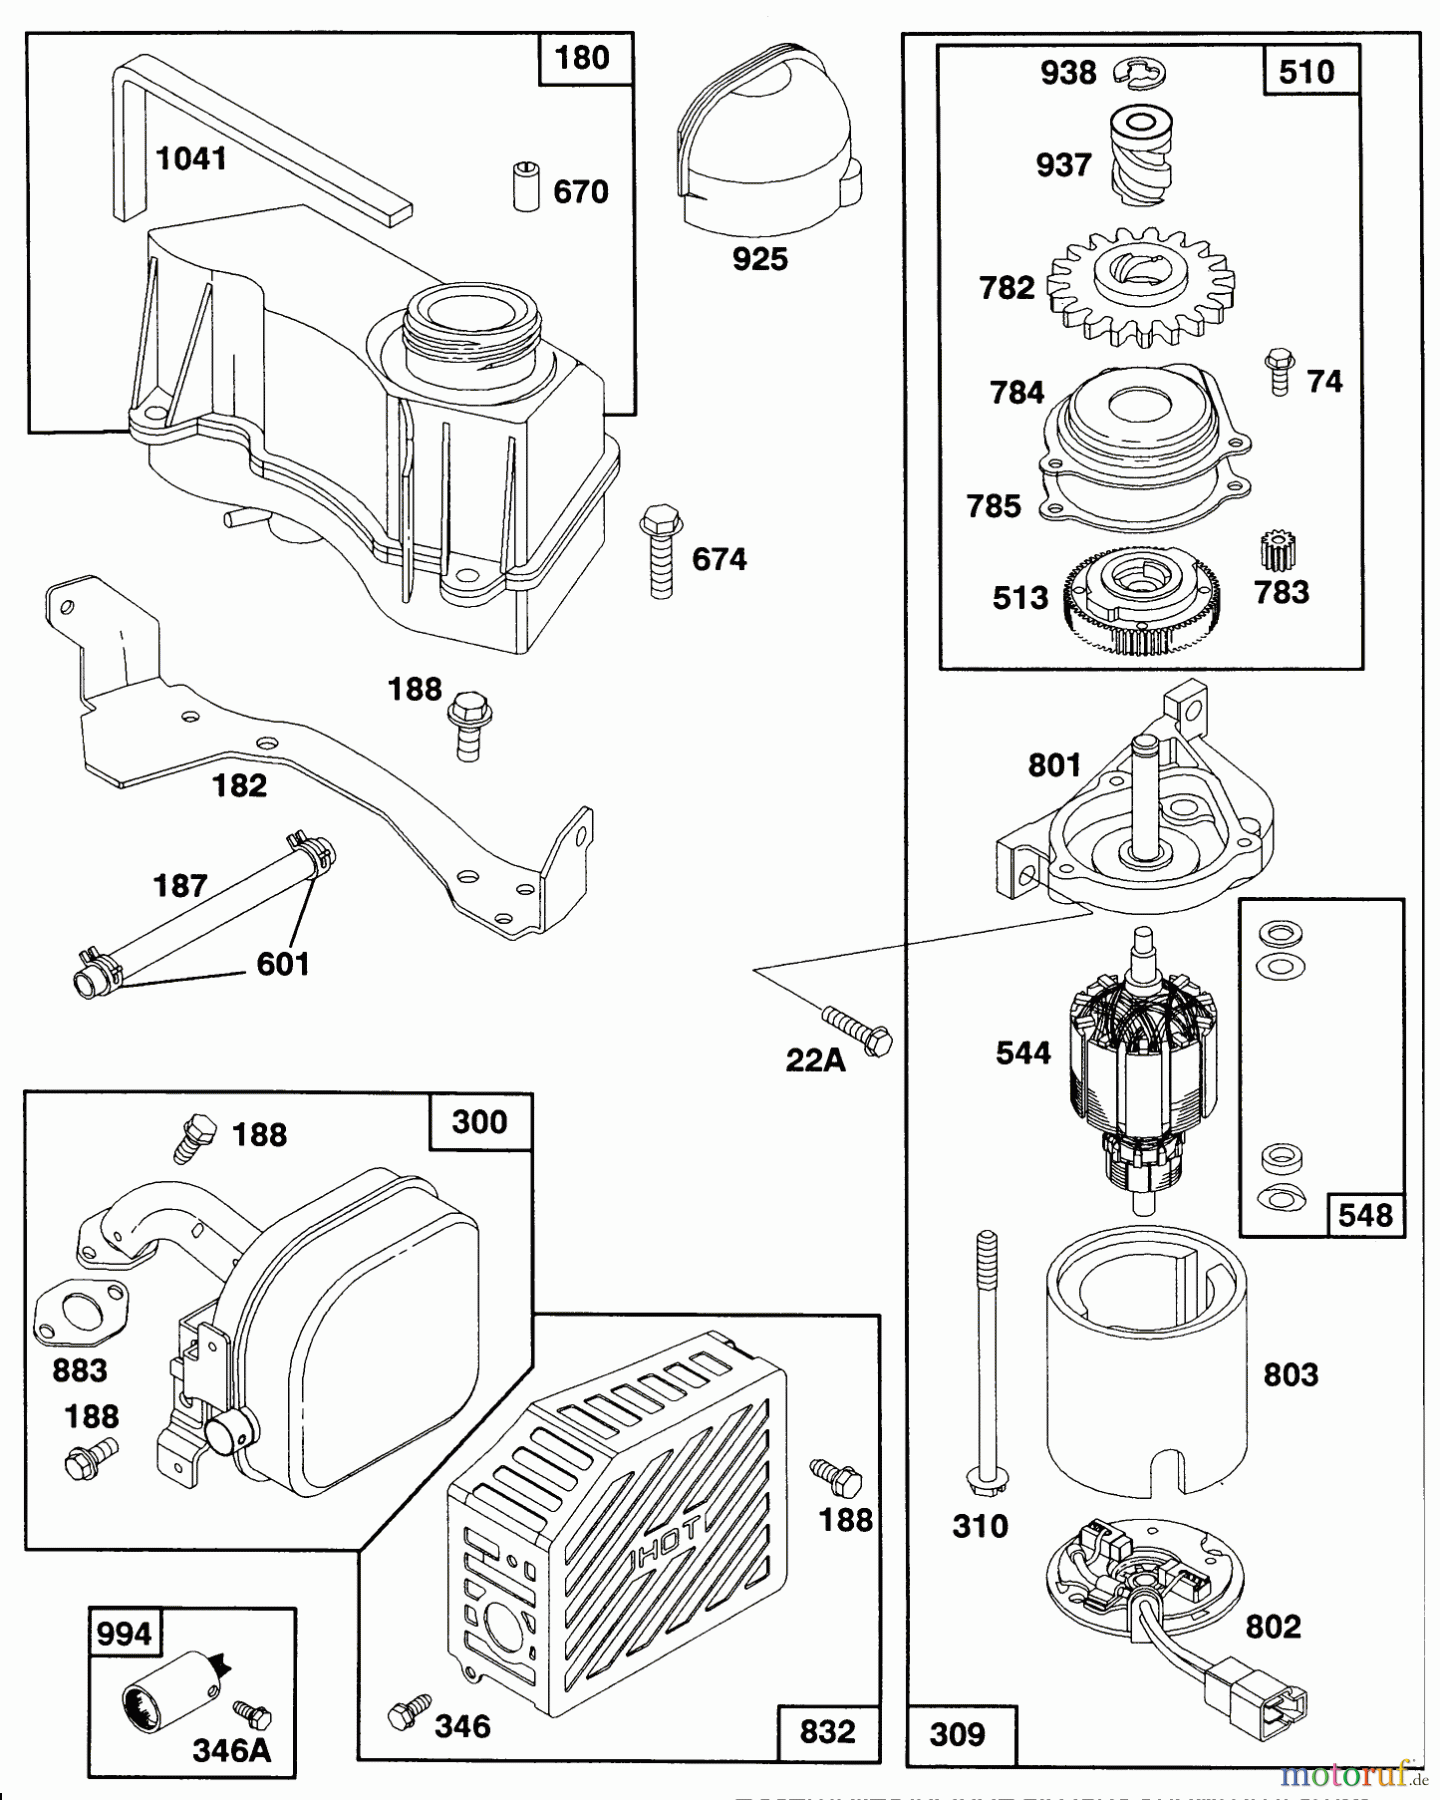  Toro Neu Mowers, Walk-Behind Seite 2 27502 - Toro Lawnmower, 1991 (1000001-1999999) ENGINE GTS-150 77-8990 #4